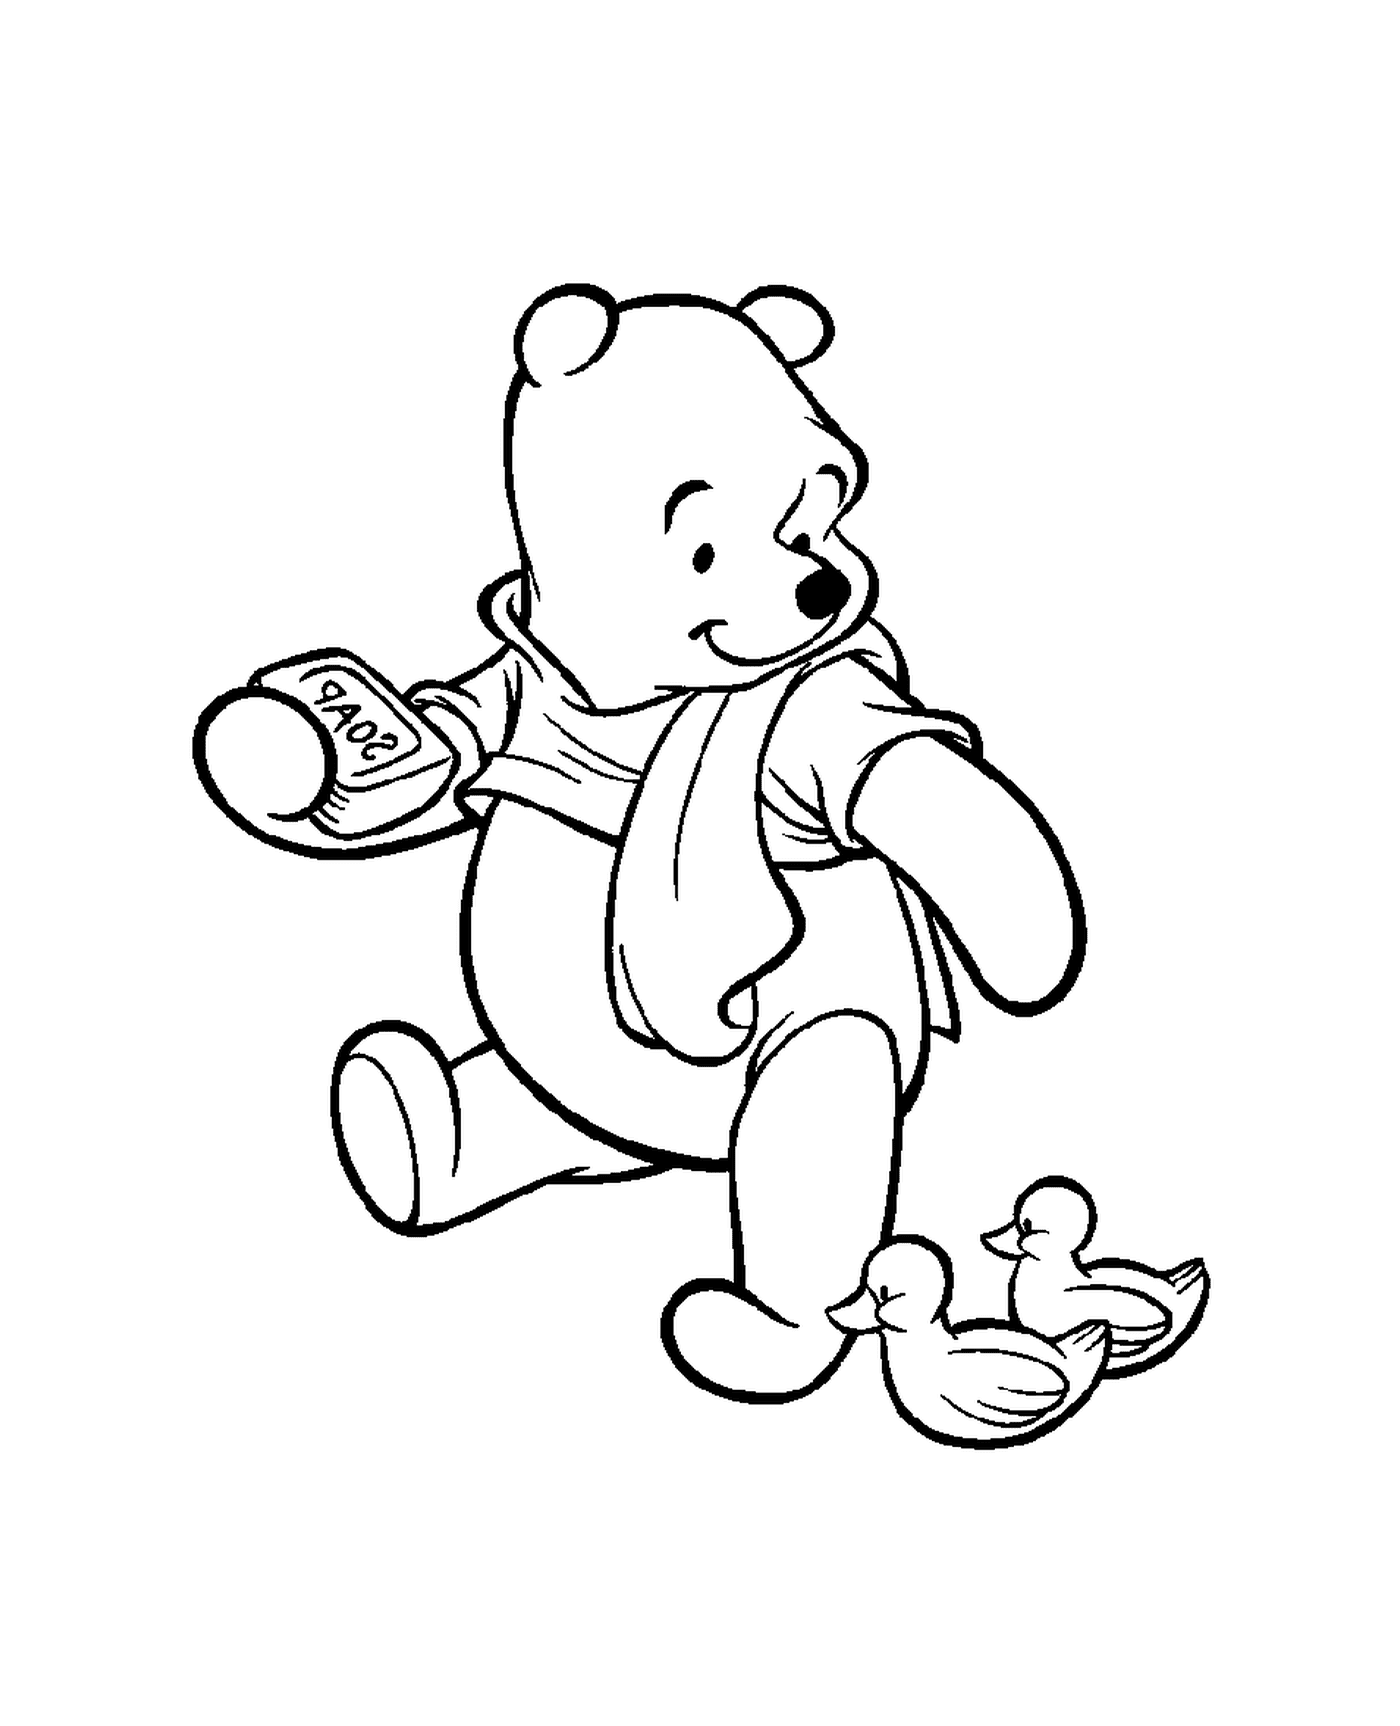  Winnie the bear takes his bath 